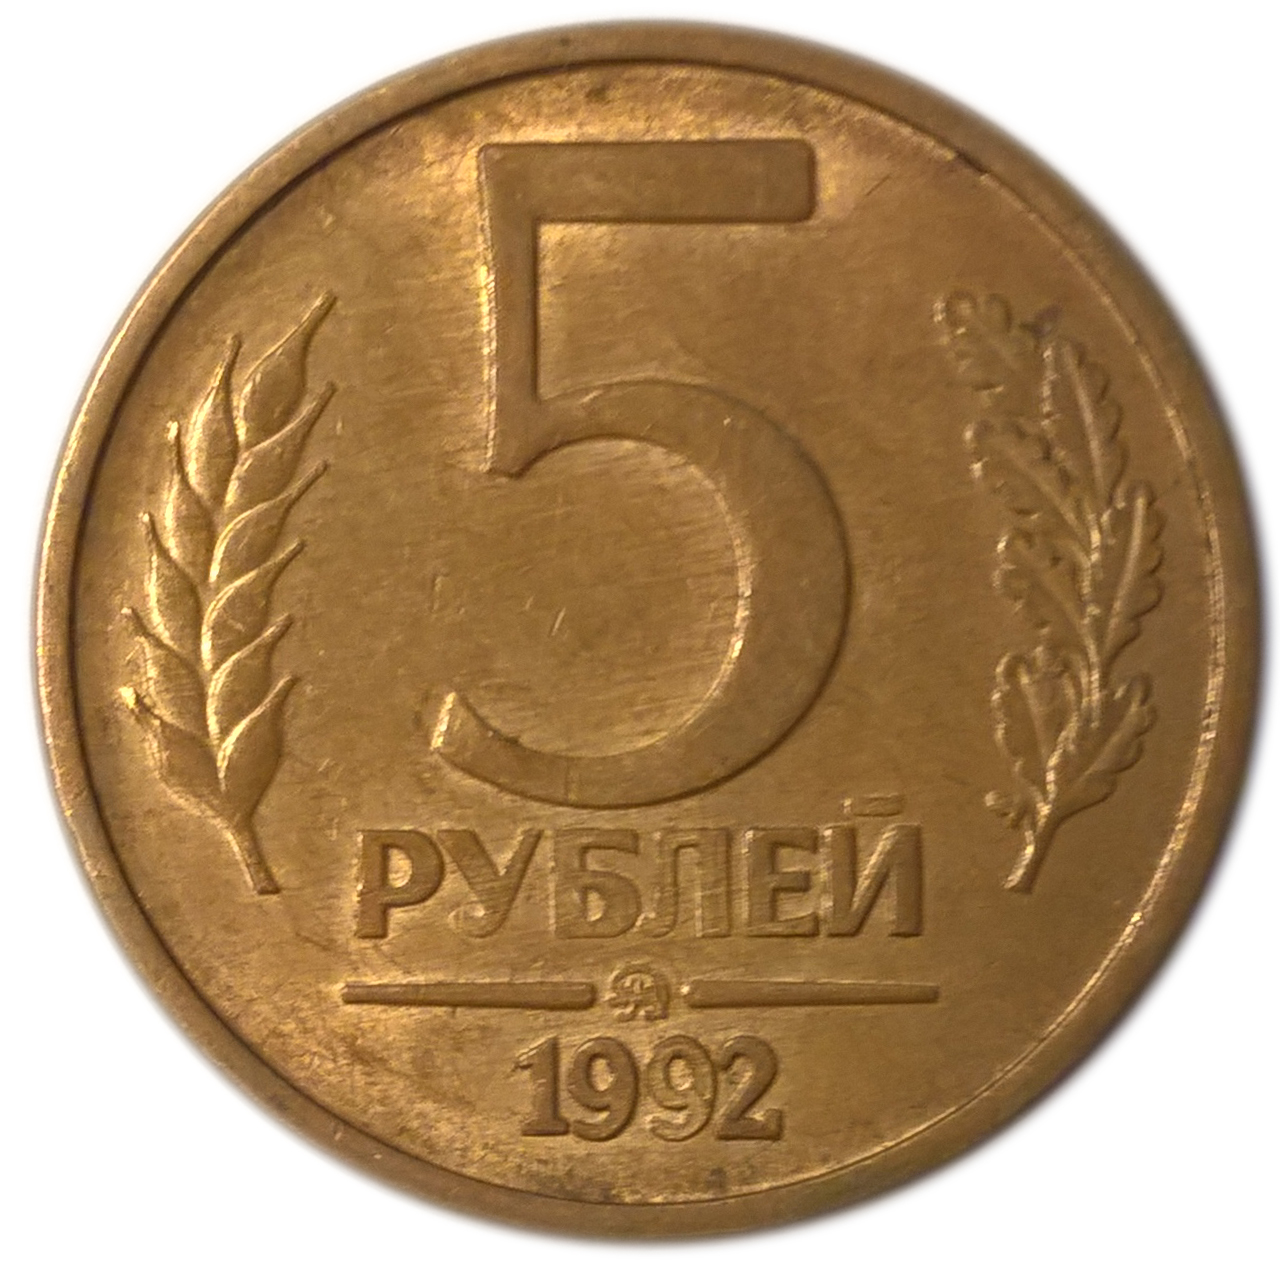 5 рублей 90. 5 Рублей 1992 года. 5 Рублей 1992 м. 5 Рублей 1992 СПМД. Монета 5 рублей 1992.